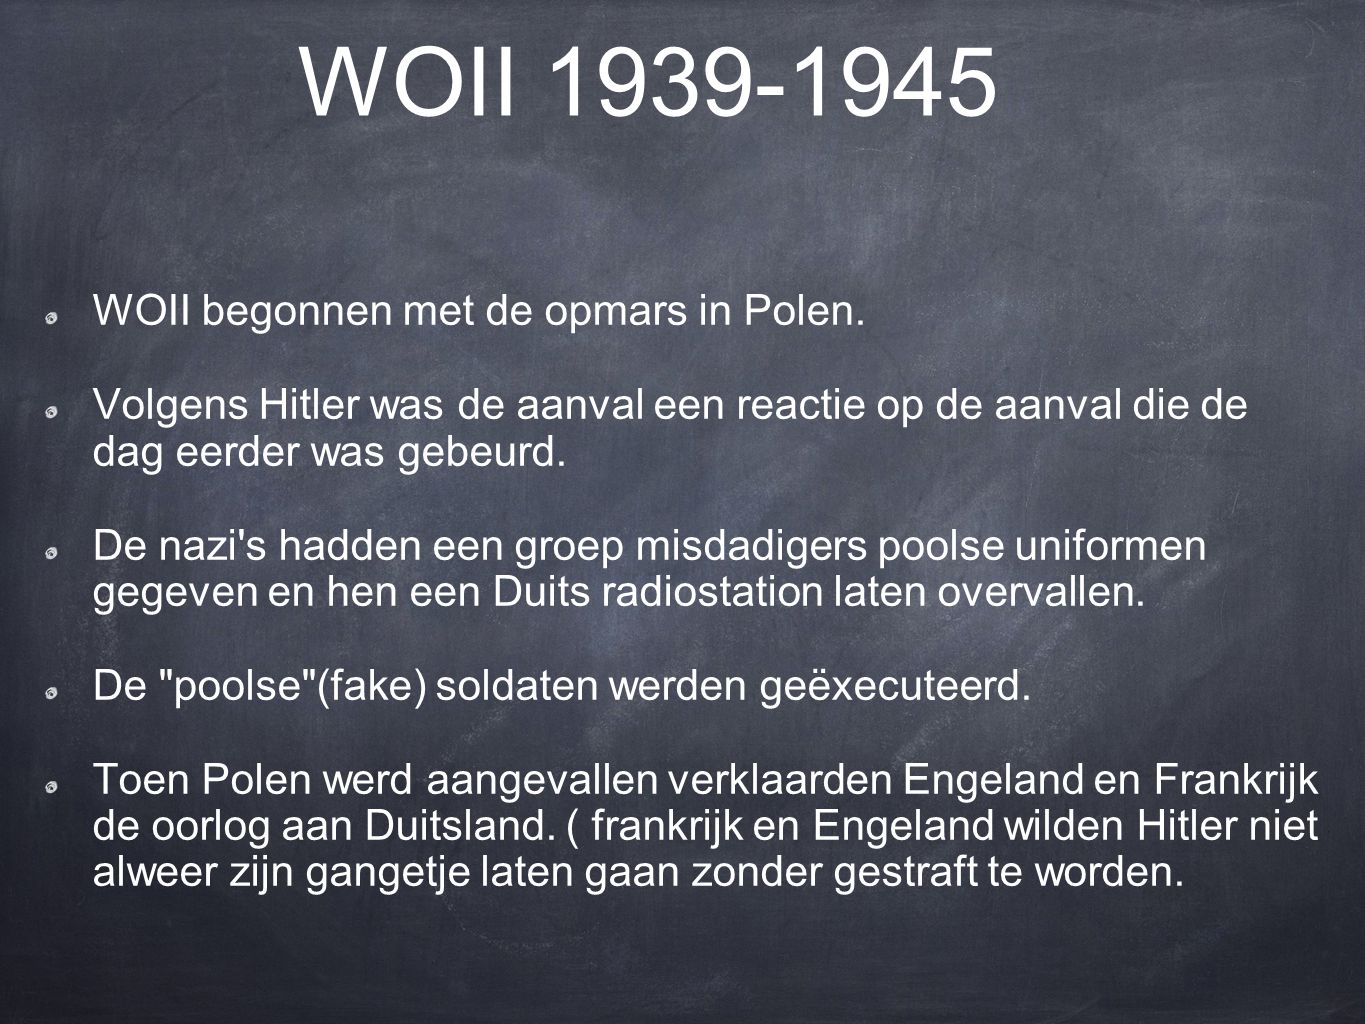 WOII WOII begonnen met de opmars in Polen.